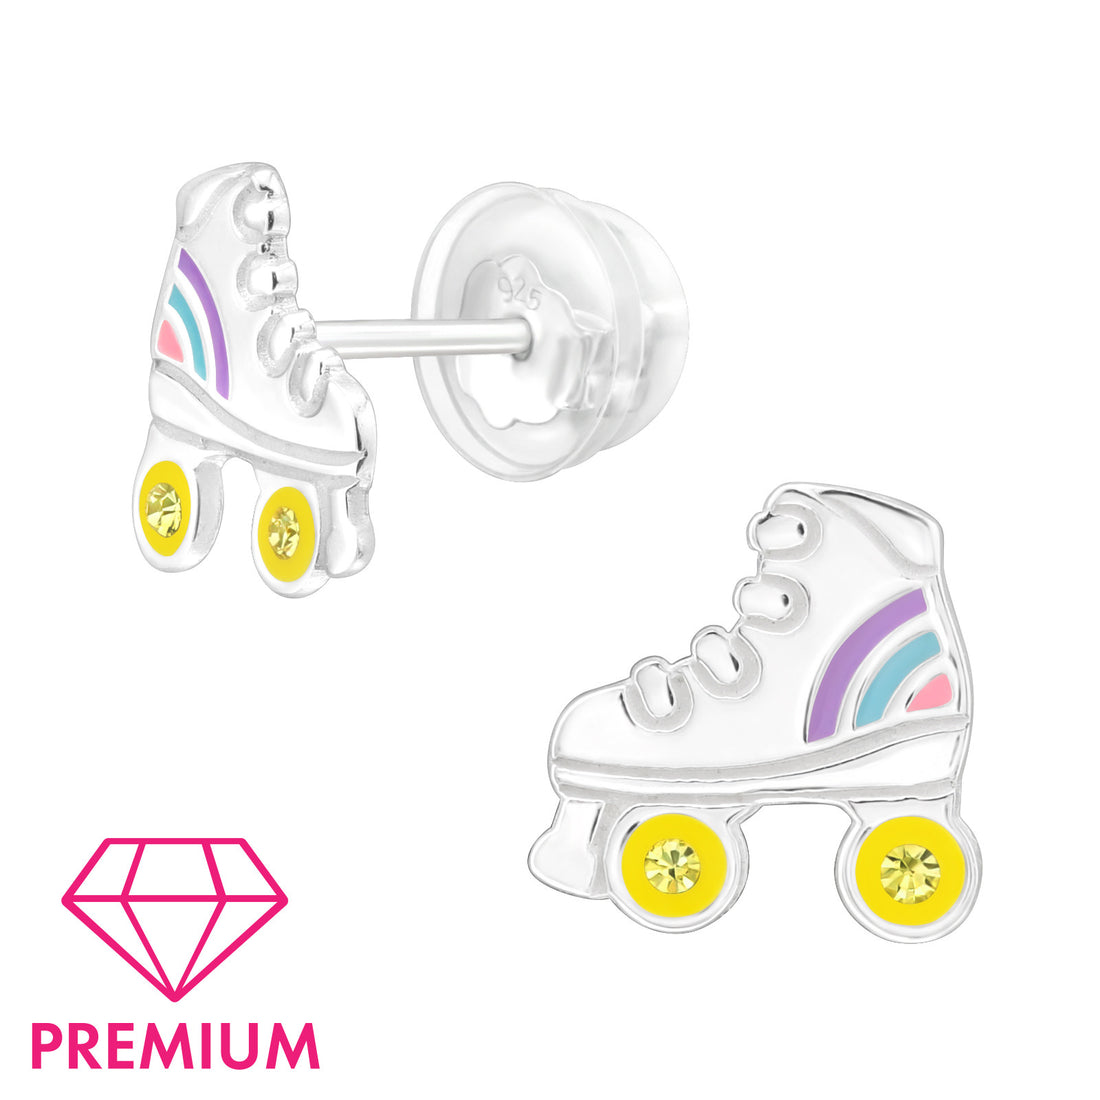 Zilveren kinderoorbellen Premium: Rolschaatsen